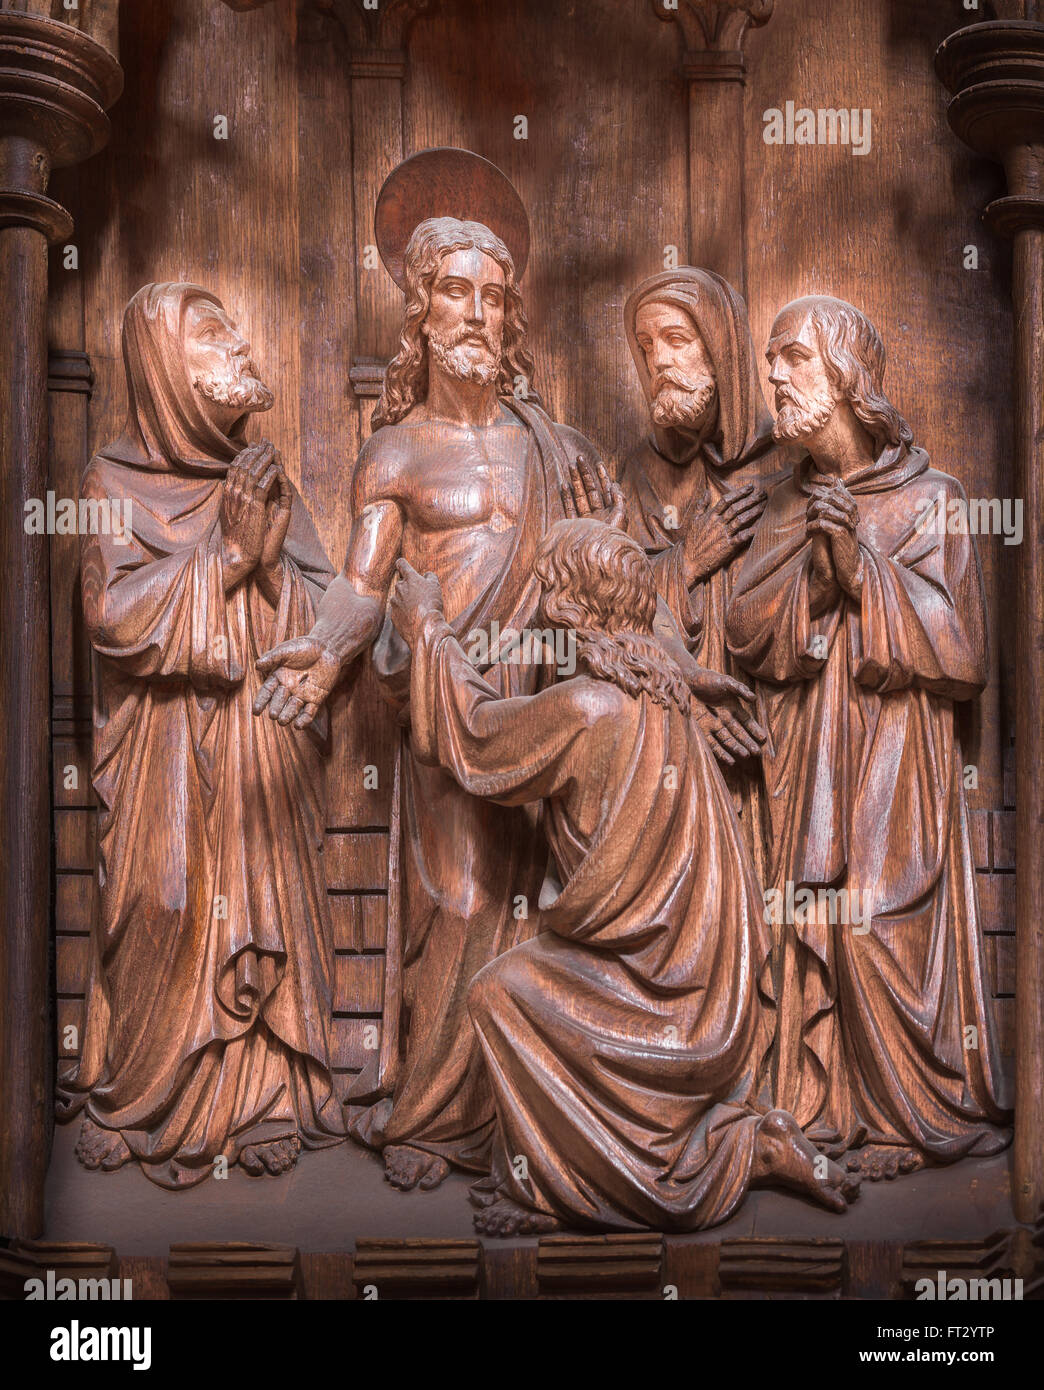 Der auferstandene Jesus erfüllt seinen Jüngern, Teil einer Serie des vierzehnten Jahrhundert hölzerne Carvings illustrieren das Leben Jesu Christi. Stockfoto